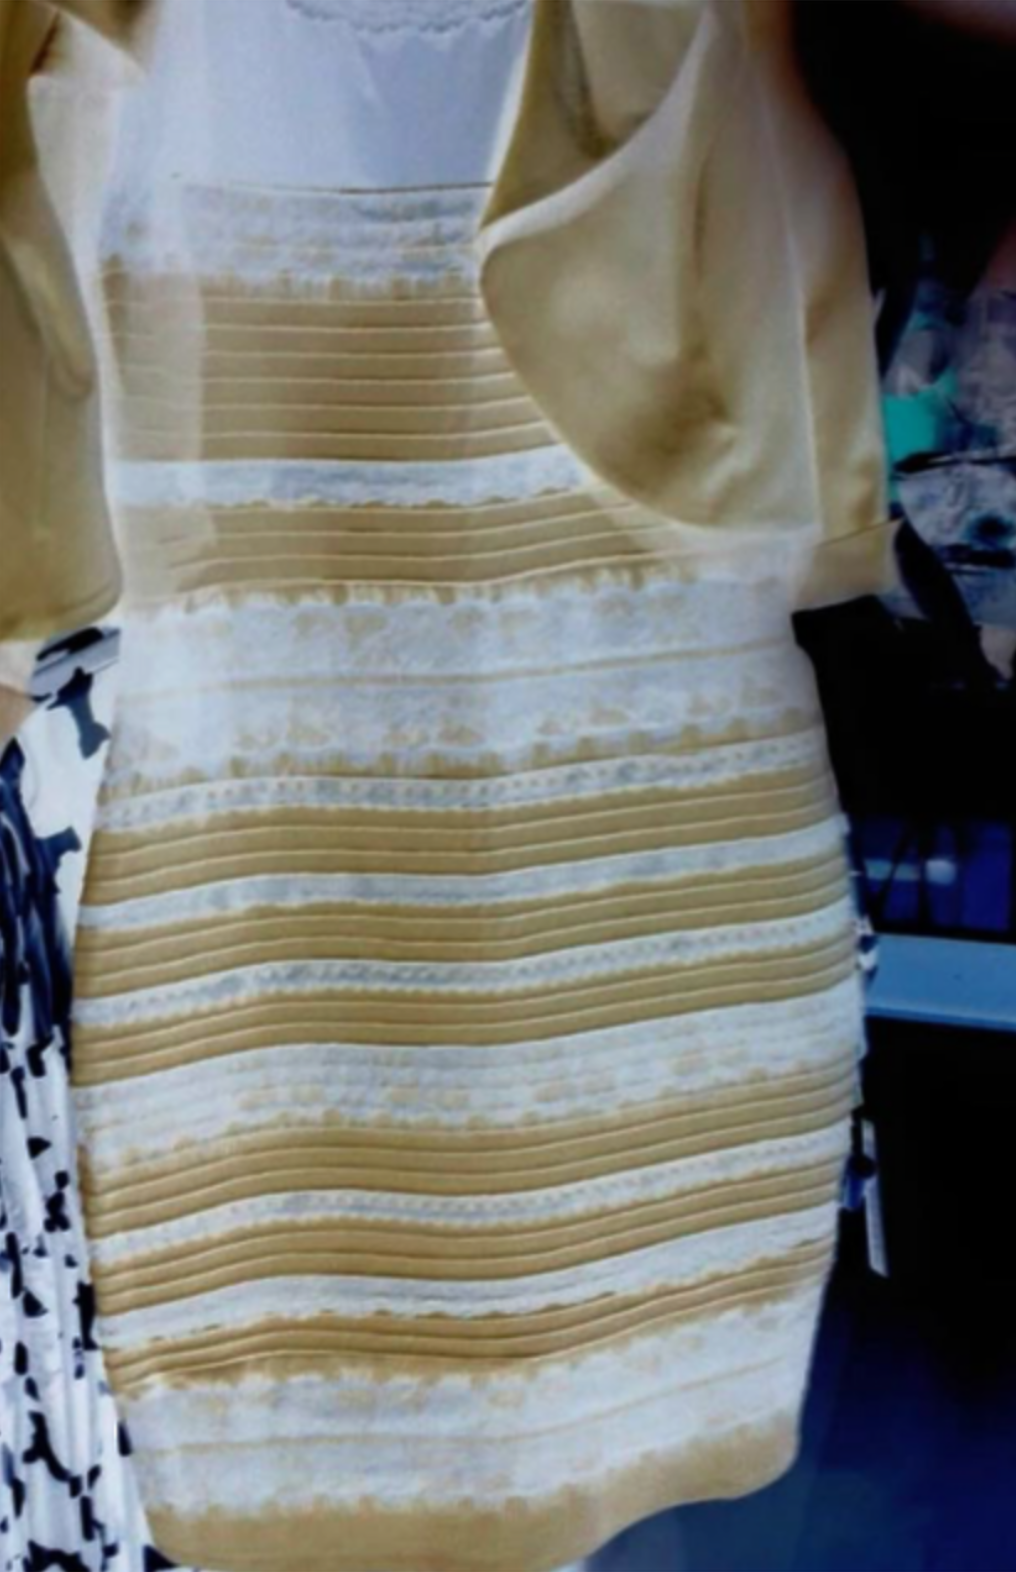 Какого цвета платье синее или белое